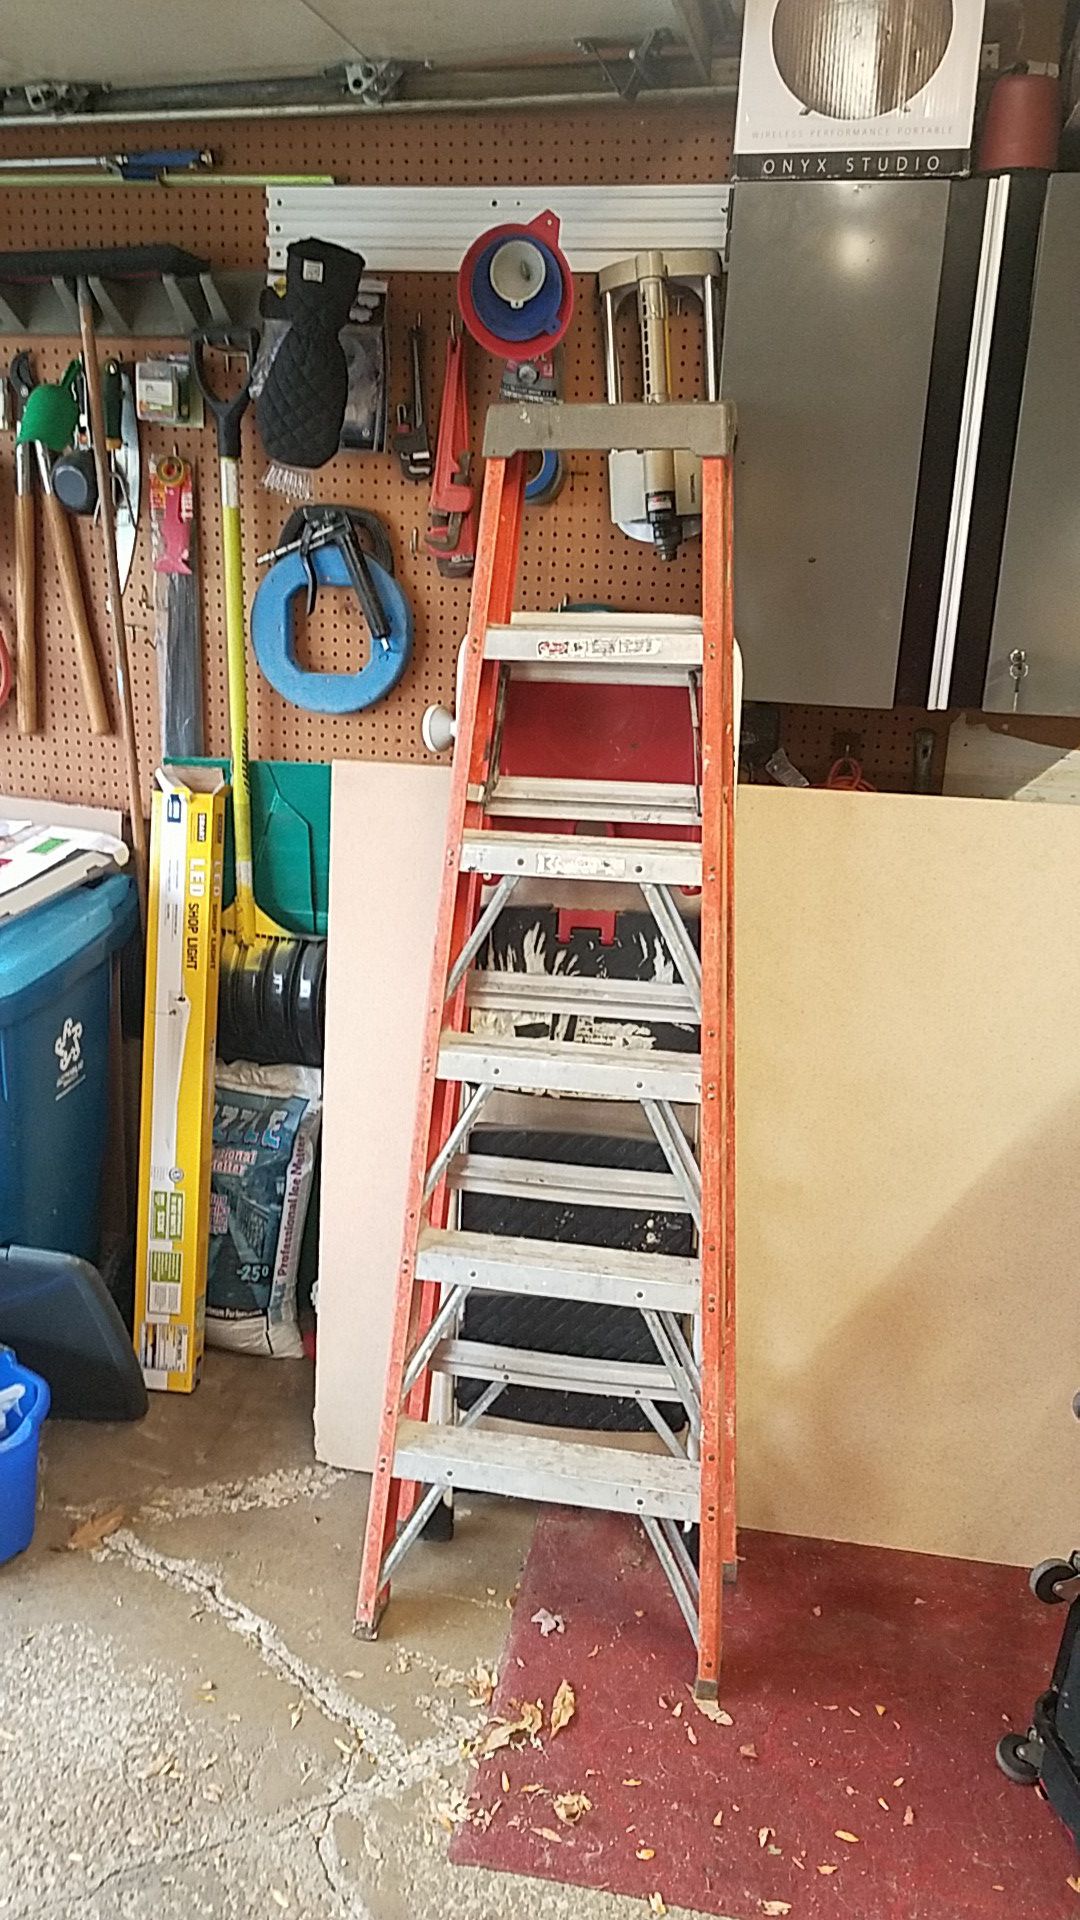 Keller 6' step ladder